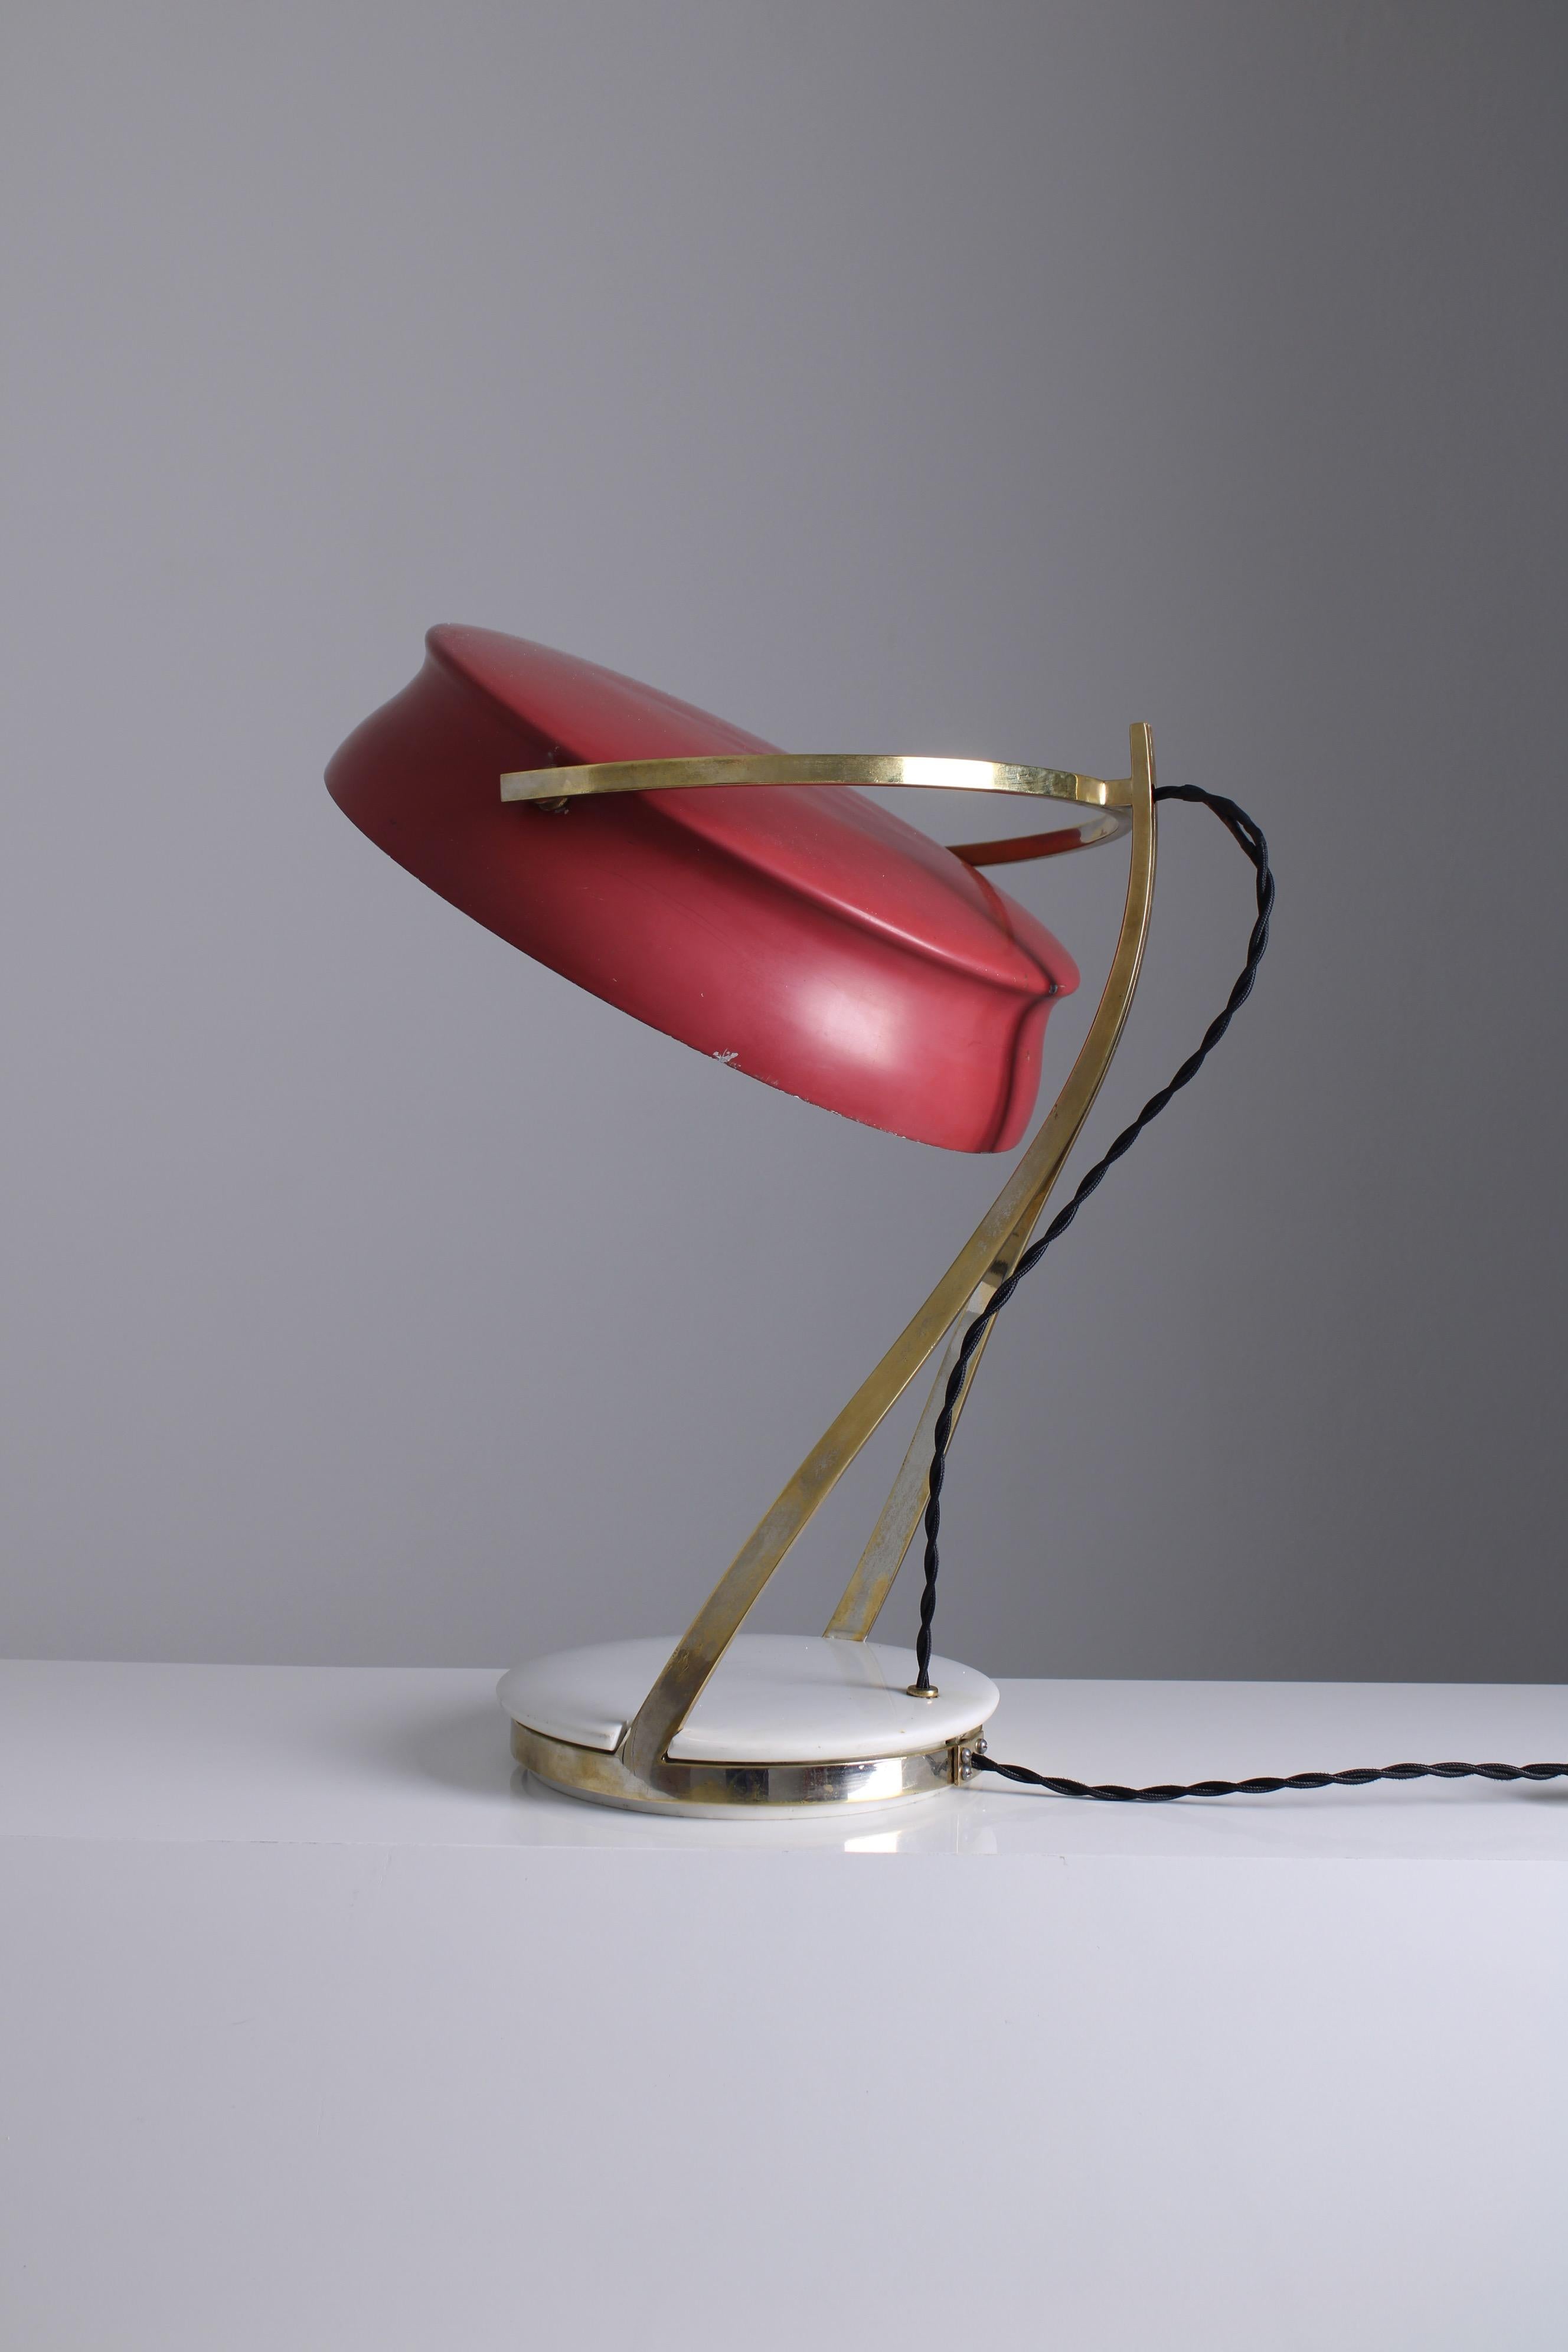 Une lampe de bureau rare appelée Calle. Il a été conçu et fabriqué par une petite entreprise milanaise du nom de Bruno Chiarini. Ce fabricant existait déjà au début des années 1950 et, durant sa période d'activité, il a fabriqué des lampes